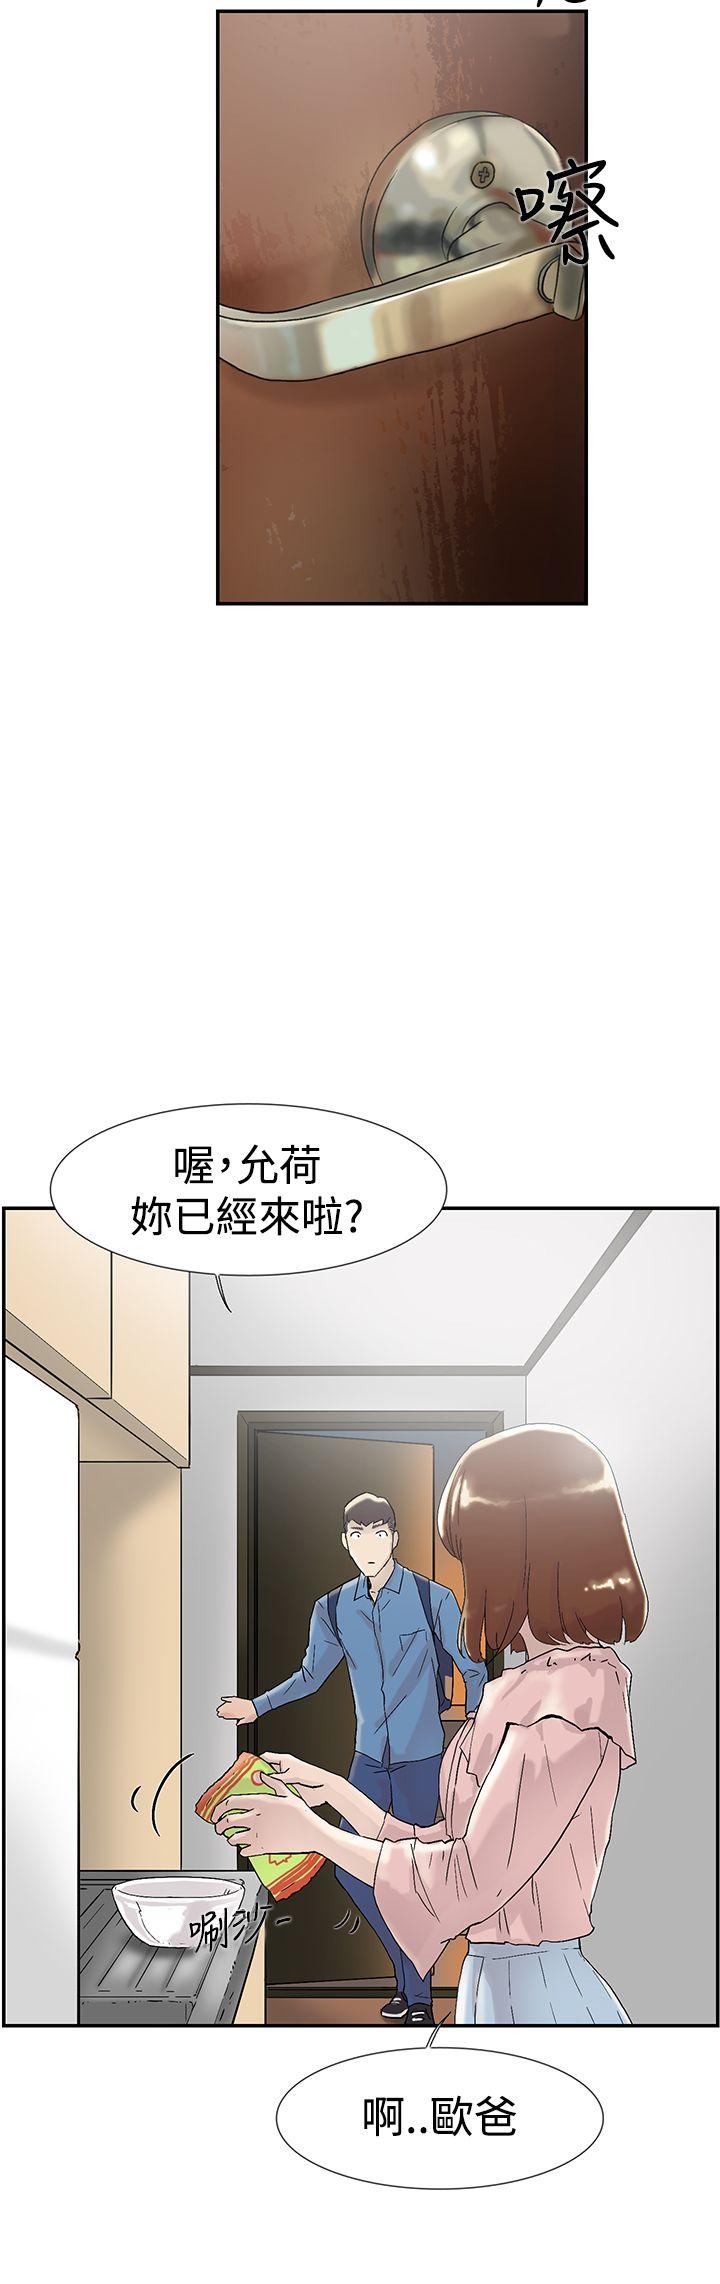 韩国污漫画 雙重戀愛 第54话 29